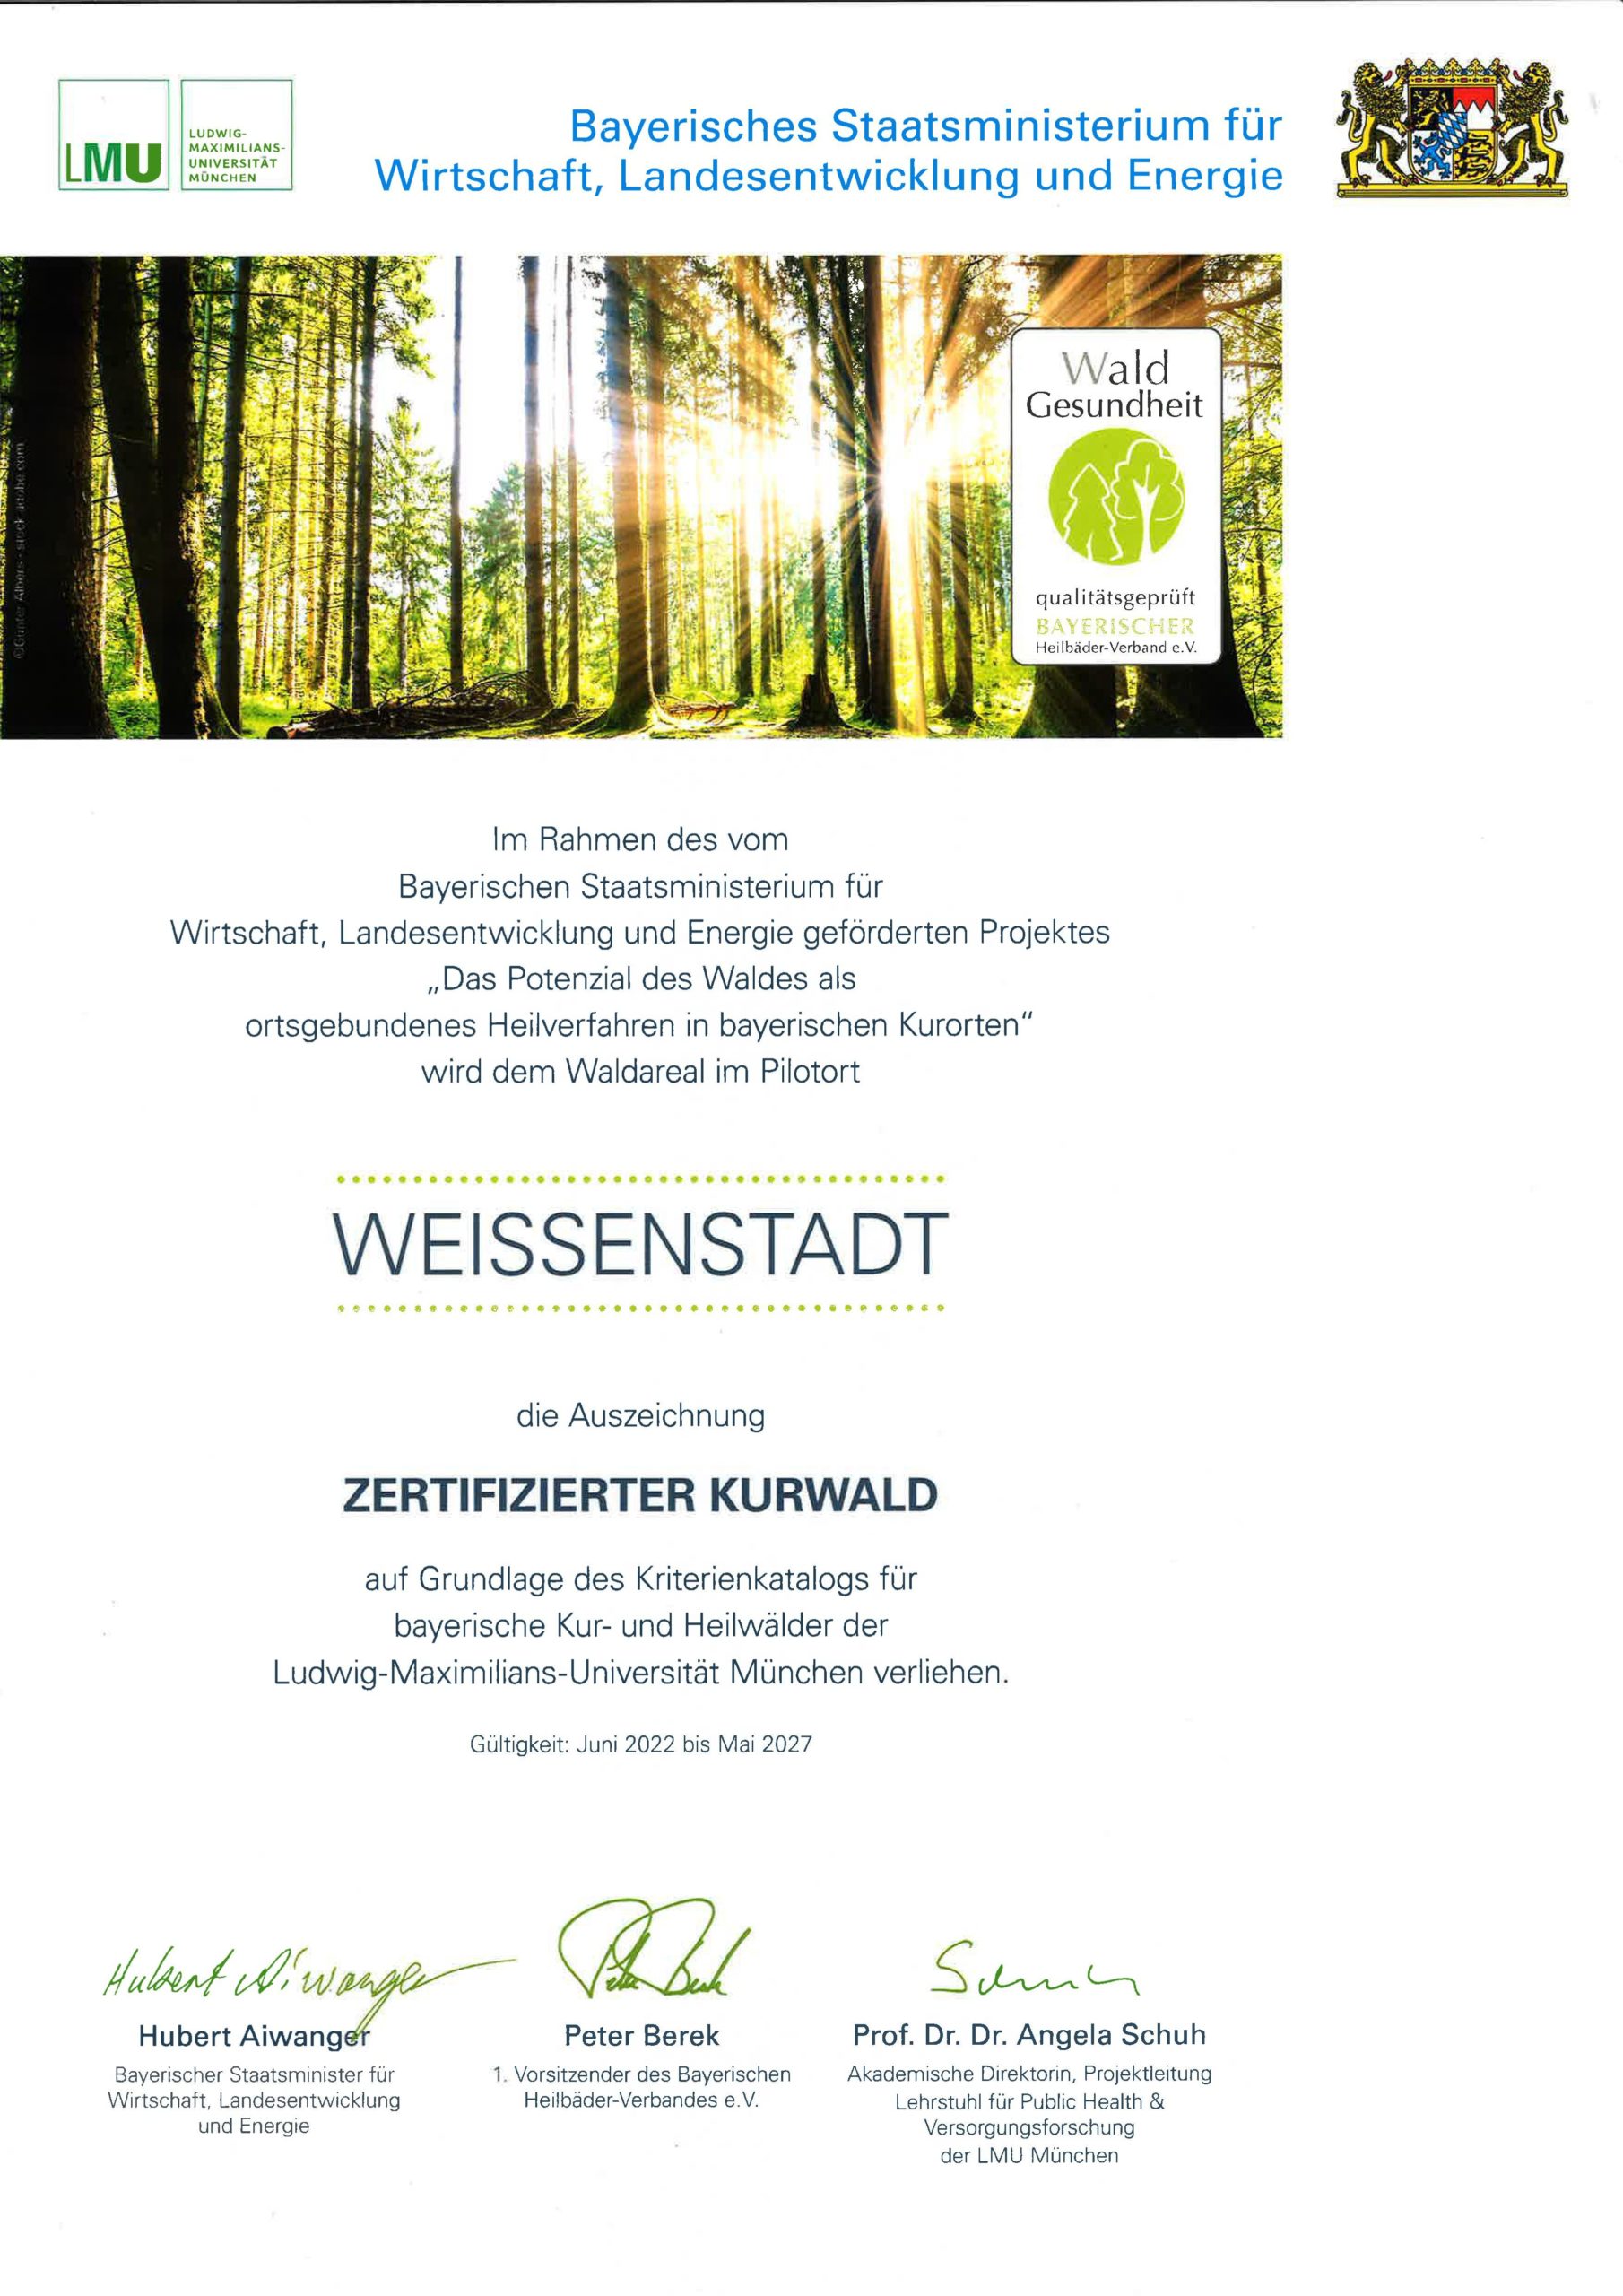 Kurwald-Zertifikat des Bayerischen Wirtschaftsministeriums